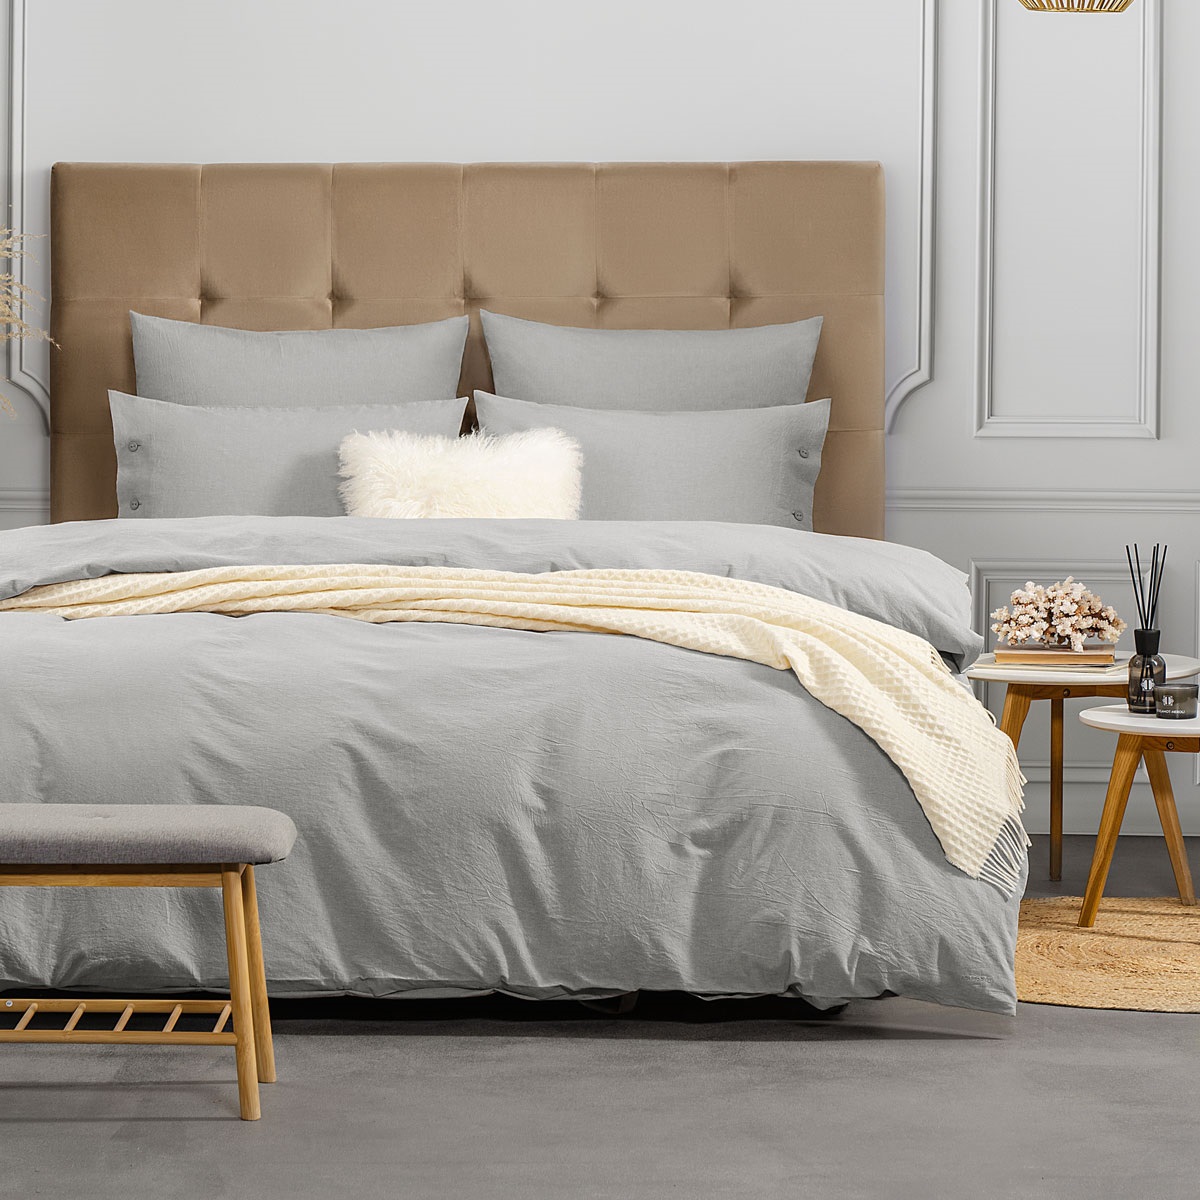 Комплект постельного белья Prime Prive Смоген Двуспальный кинг сайз светло-серый, размер Кинг сайз - фото 1